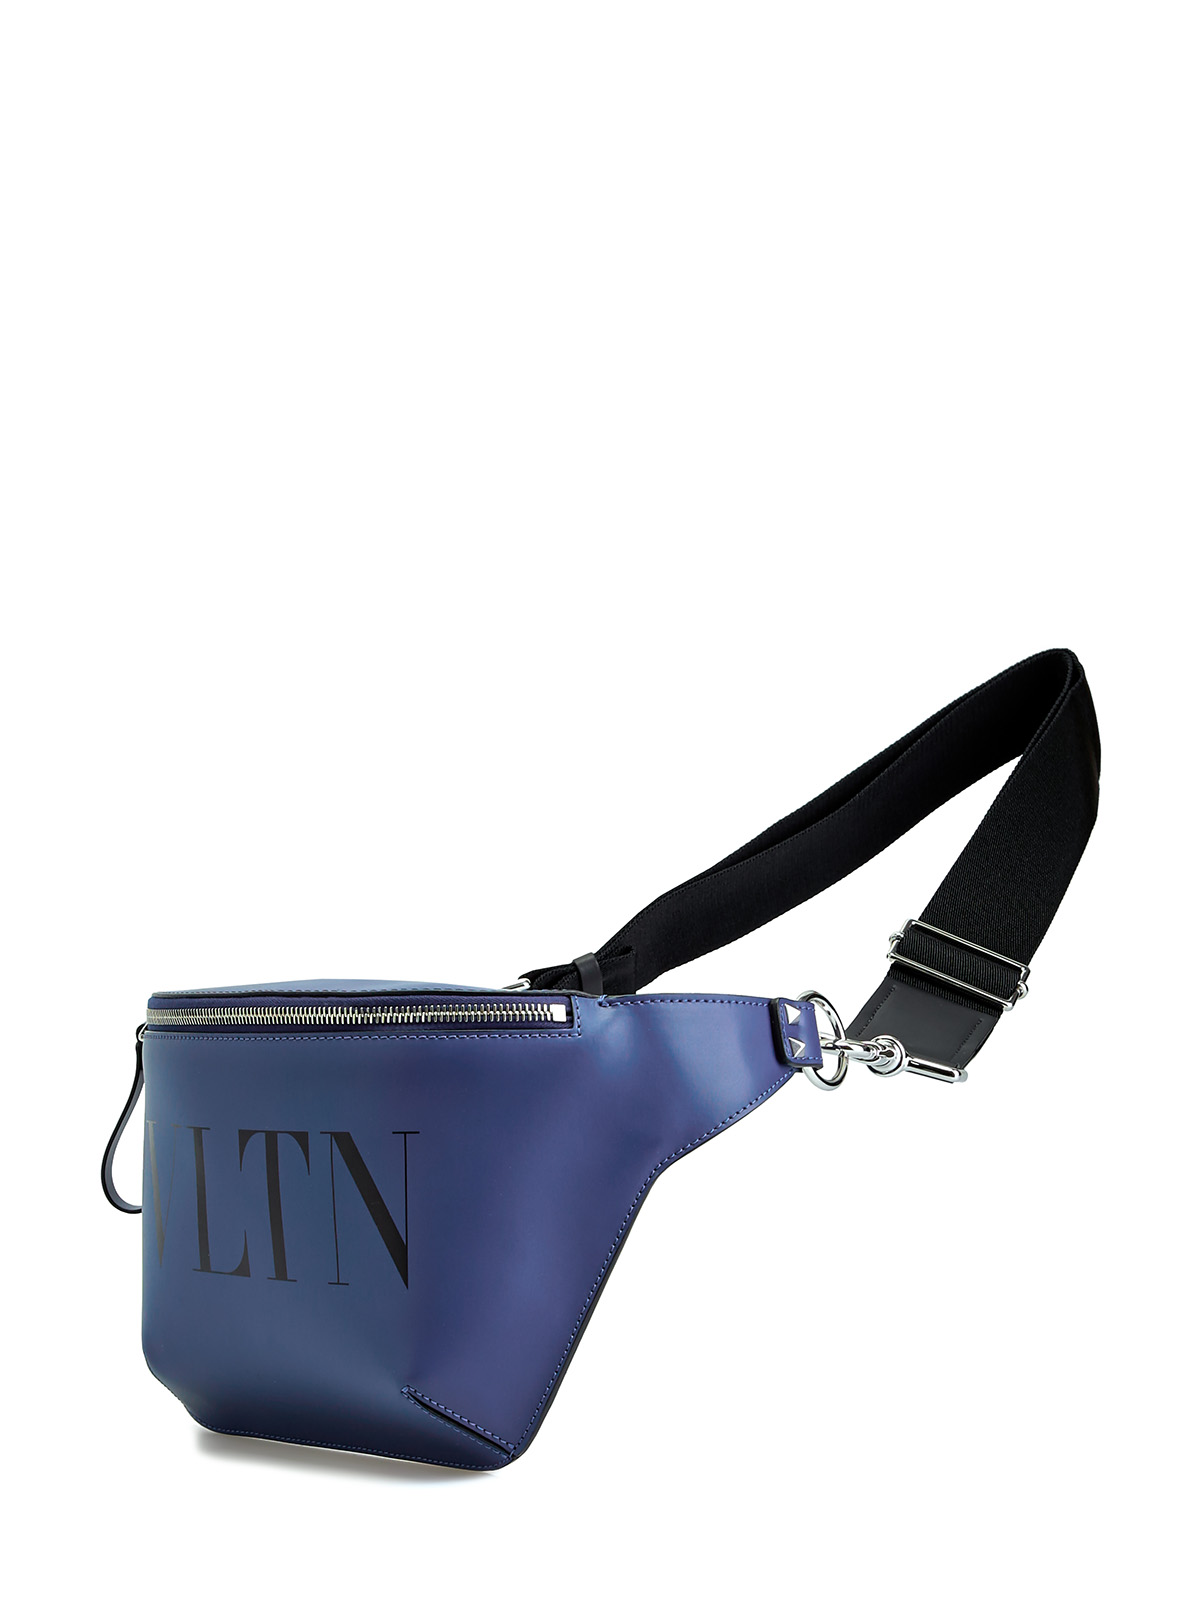 Поясная сумка VLTN из гладкой матовой кожи VALENTINO, цвет синий, размер 36;36.5;37;37.5;38;38.5;39;40;41;39.5 - фото 2